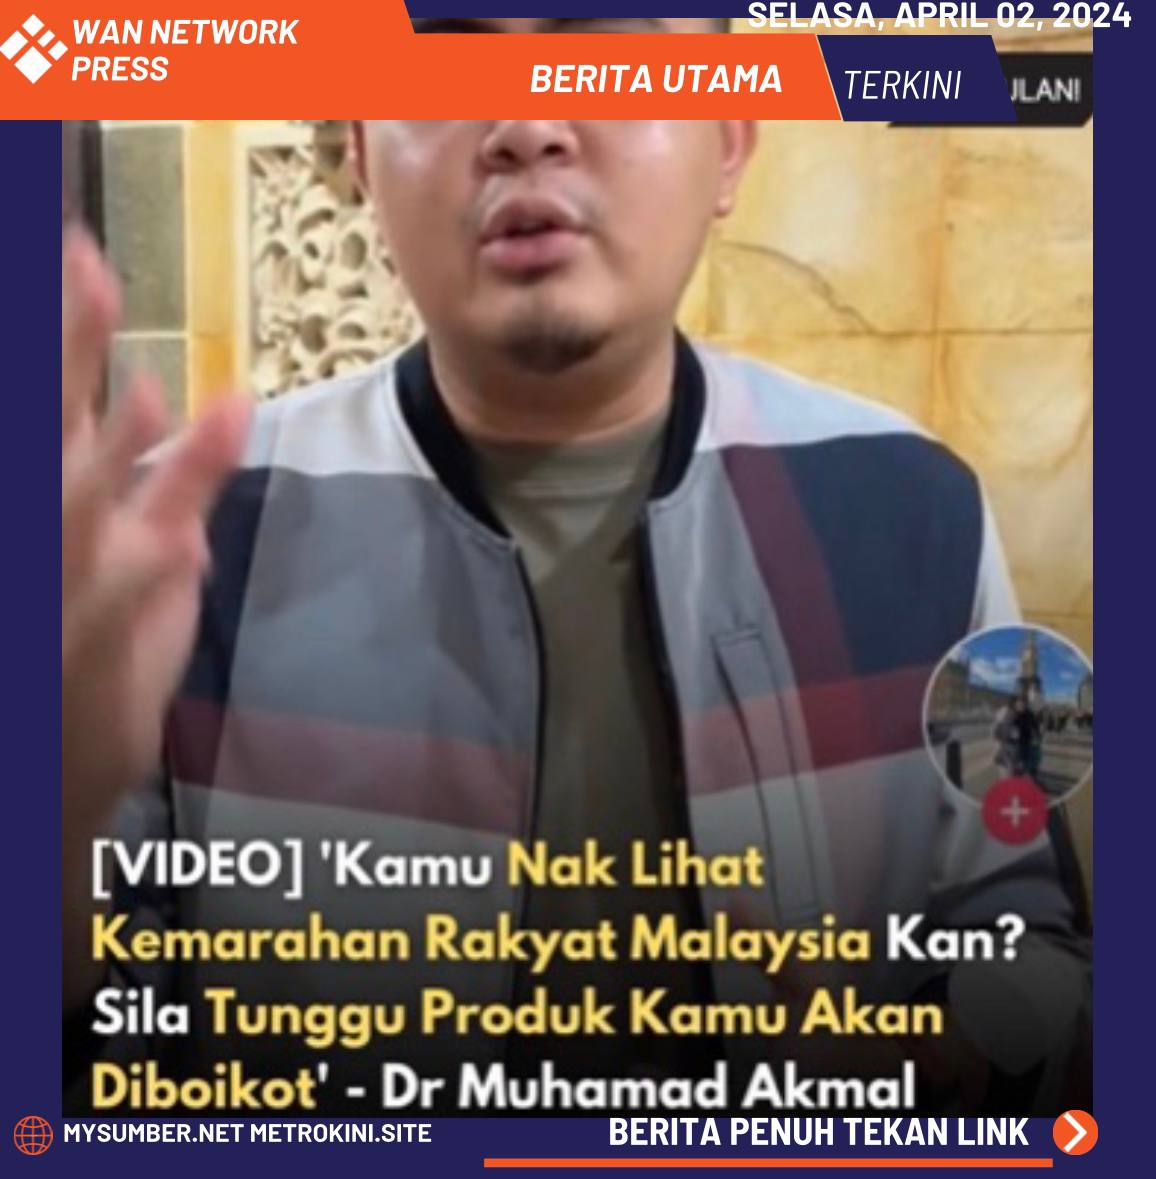 [VIDEO] Komen YB Akmal Keatas Aliff Syukri Disokong Netizen “Habis la dia lepas ni”